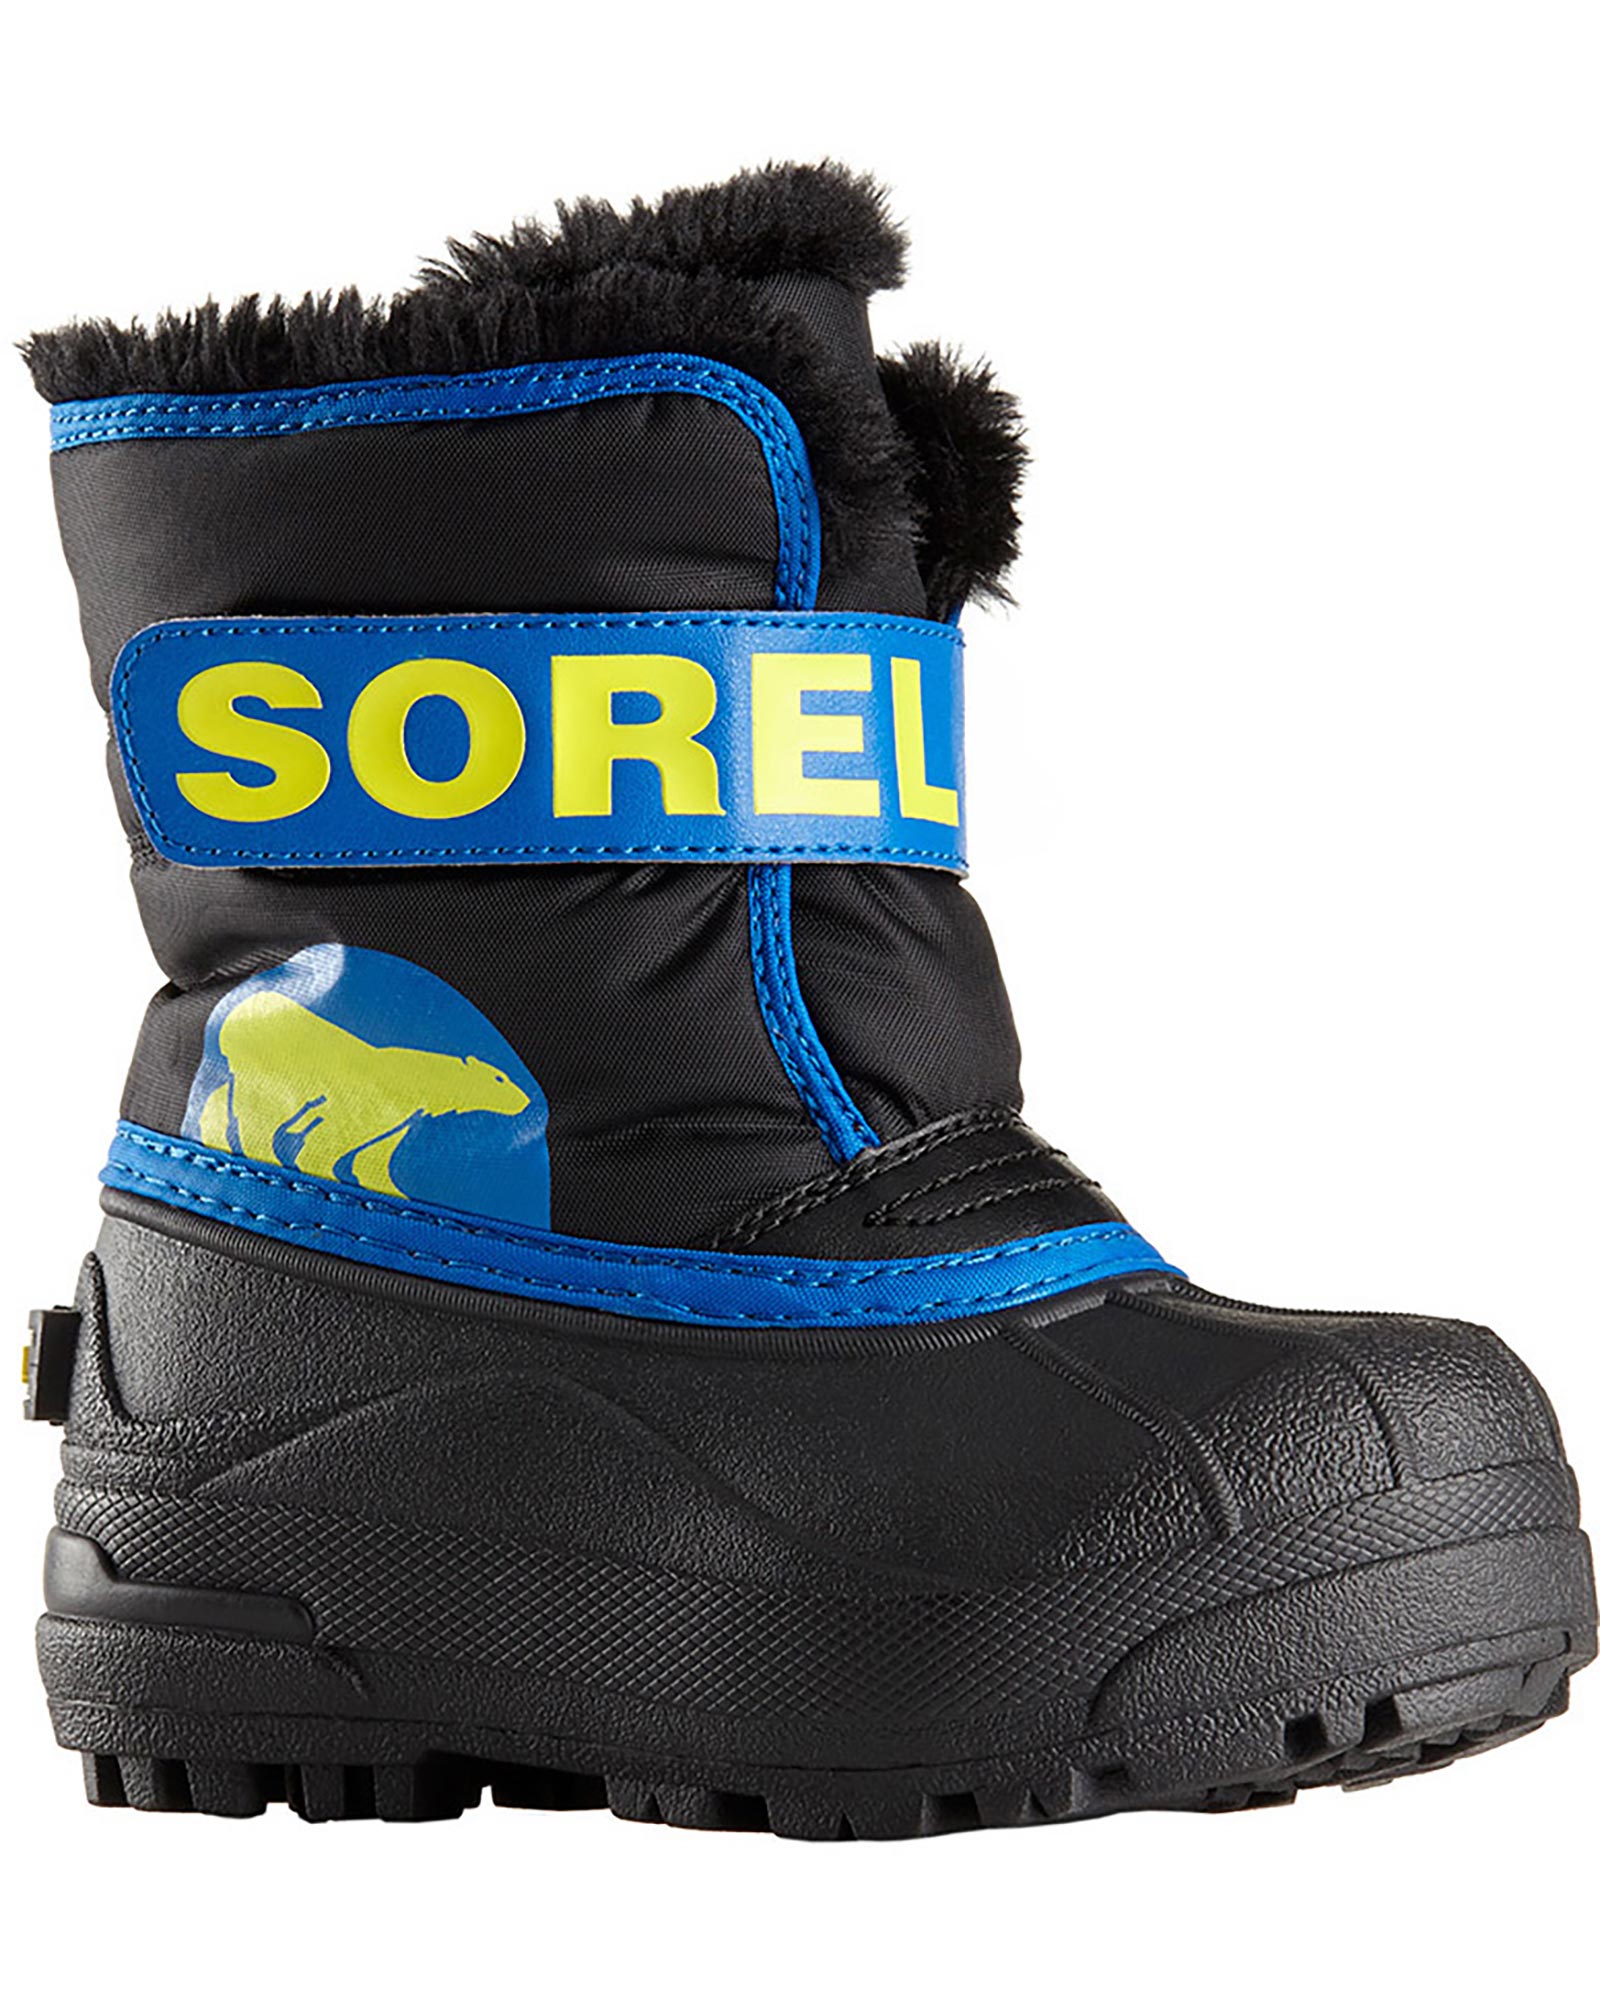 Sorel Snow Commander Toddler Snow Boots - Black/Super Blue UK 12 INF